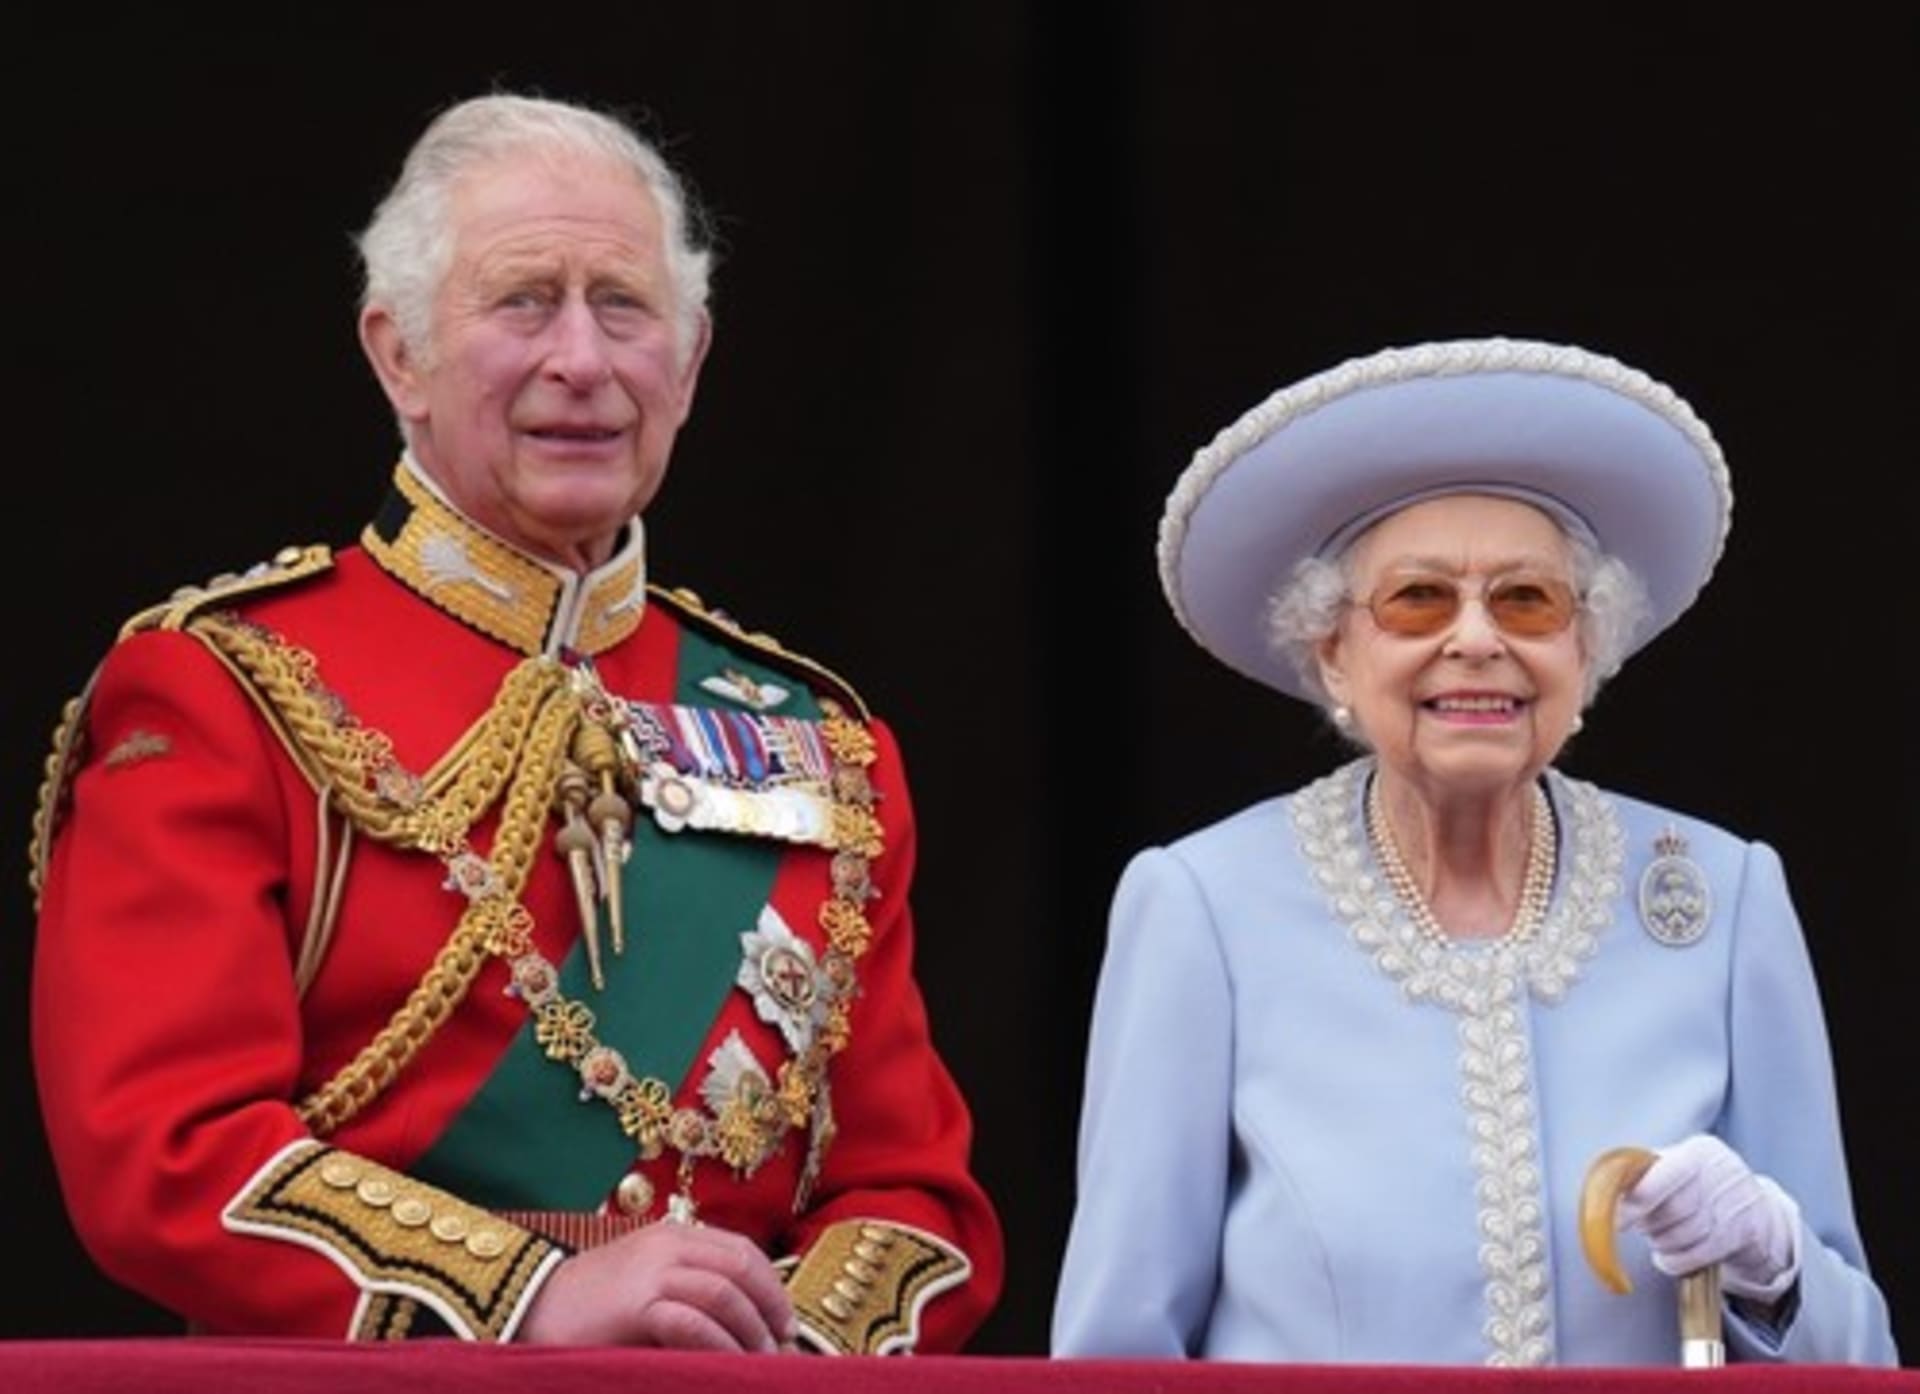 Králem je nyní Karel III., dříve známý jako princ Charles.